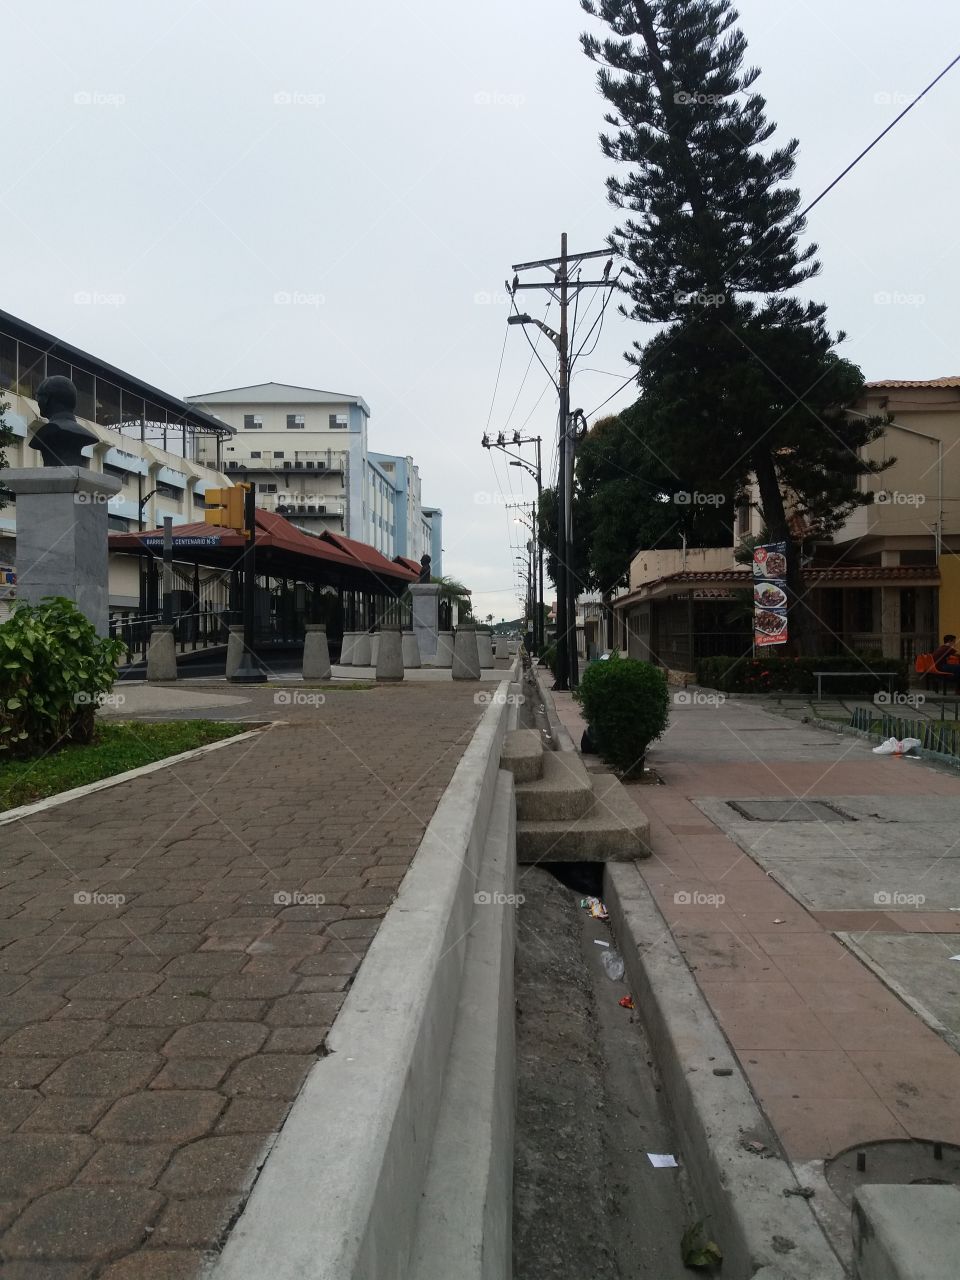 Ecuador🇪🇨 Guayas/Guayaquil - Barrio centenario